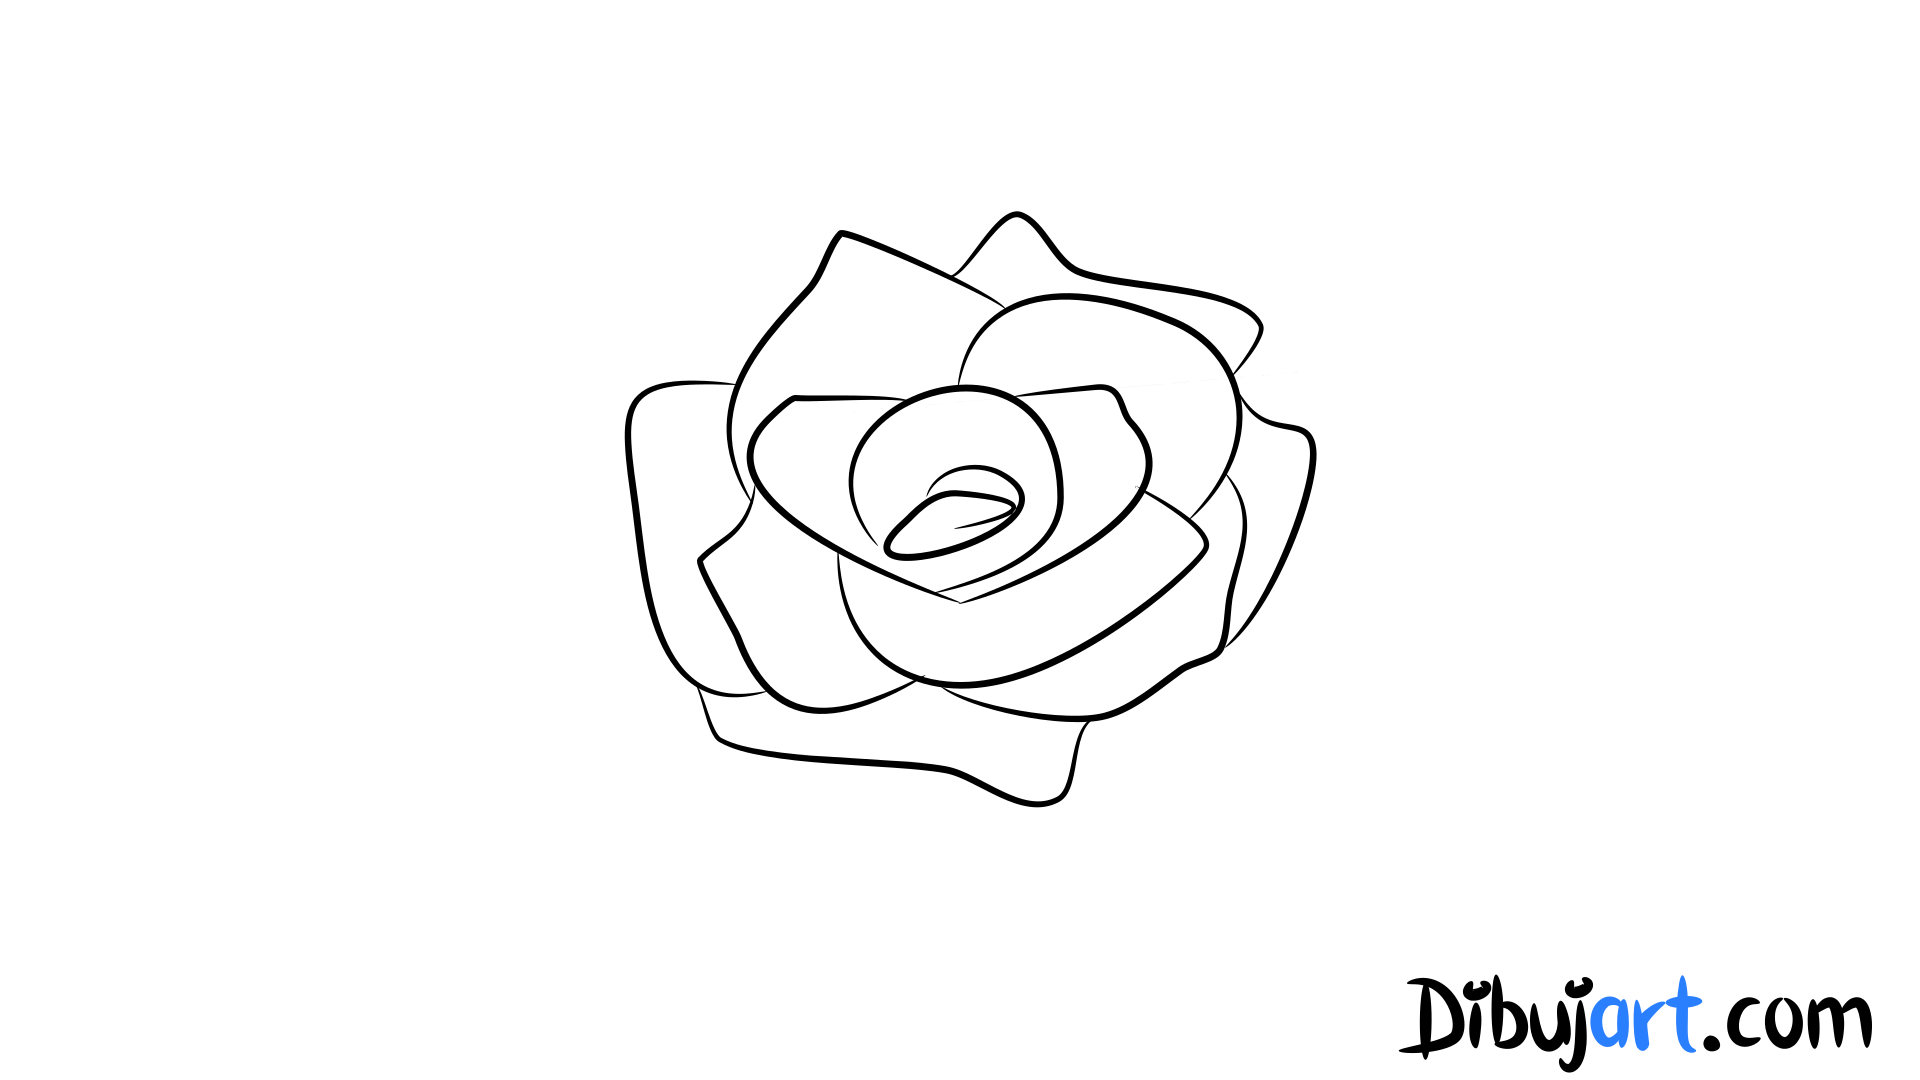 Dibujos De Rosas Faciles De Dibujar